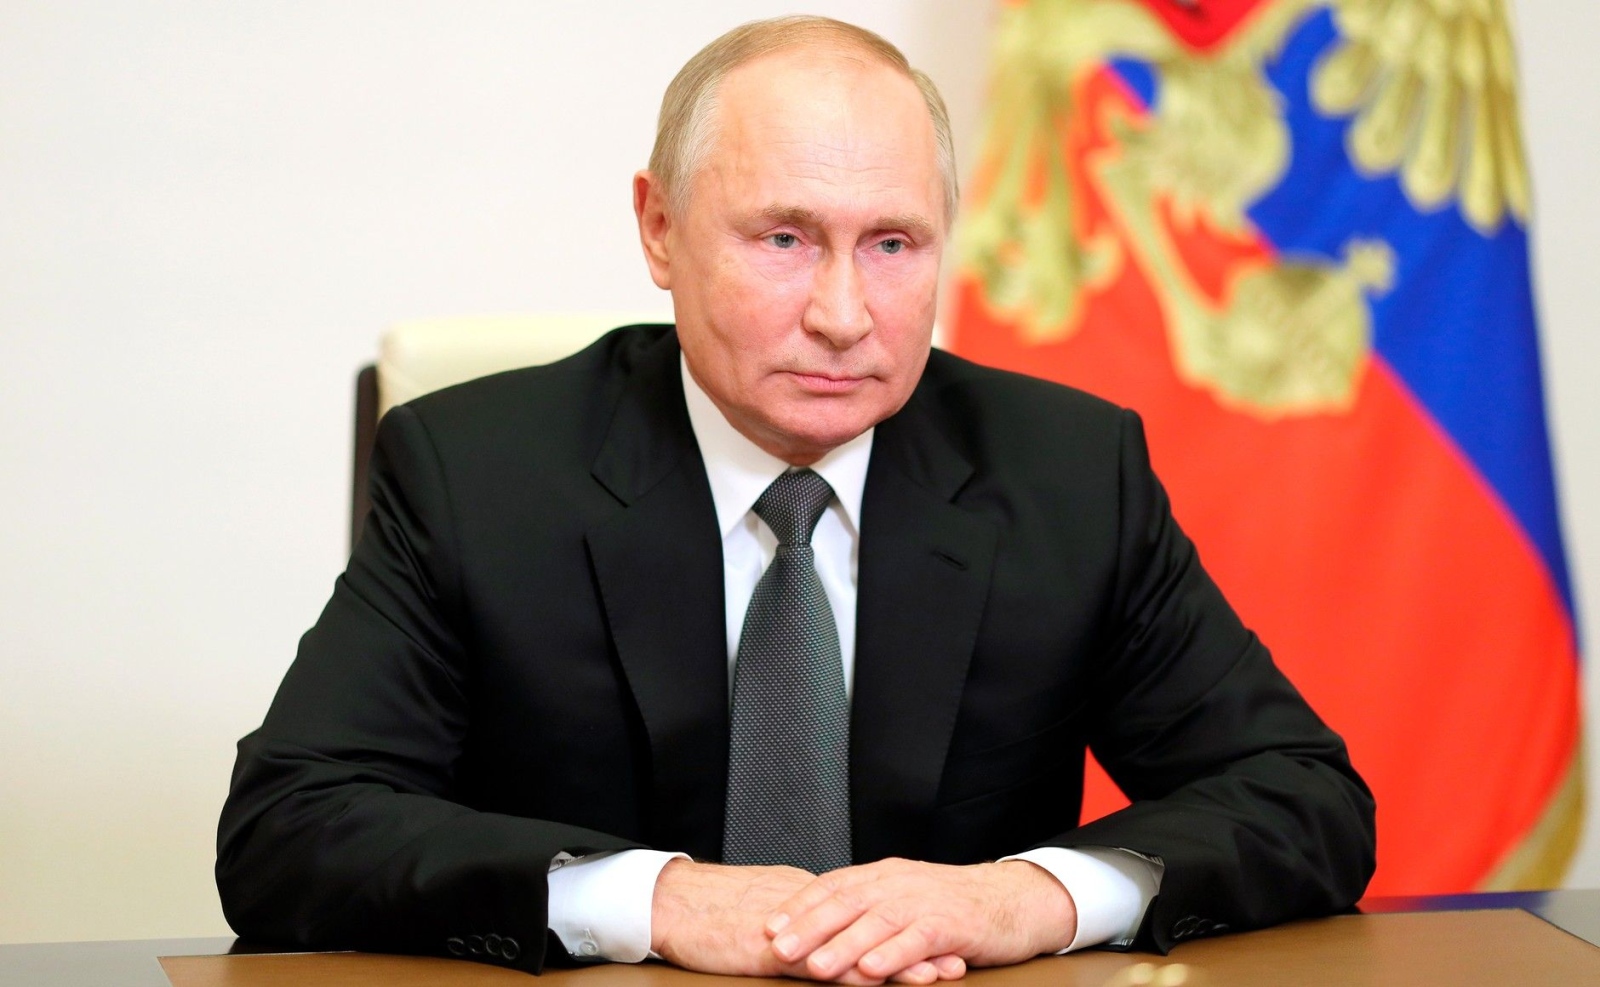 Президентът Владимир Путин нареди първата мобилизация на руски войски след